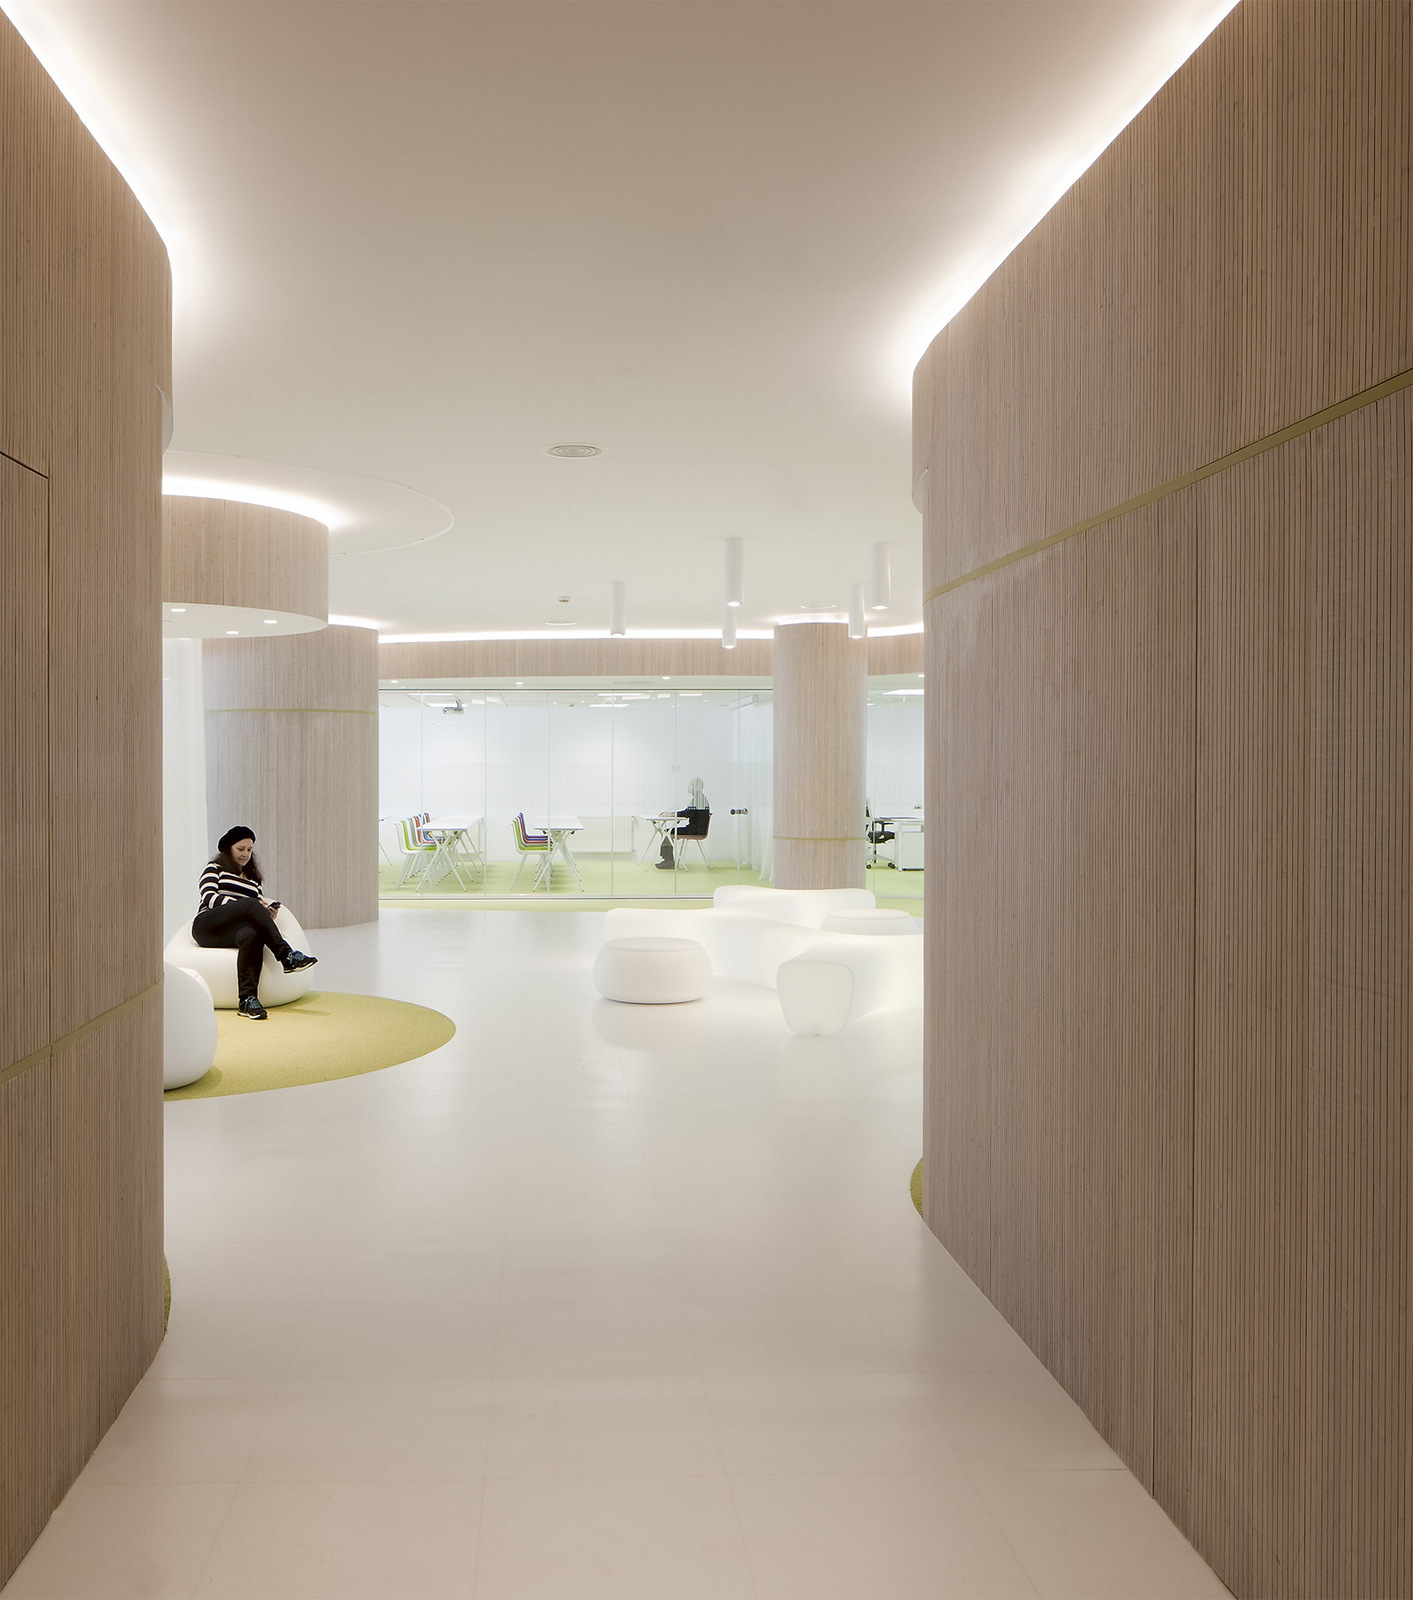 桑坦德国际创业中心|ART-Arrakis | 建筑室内设计的创新与灵感